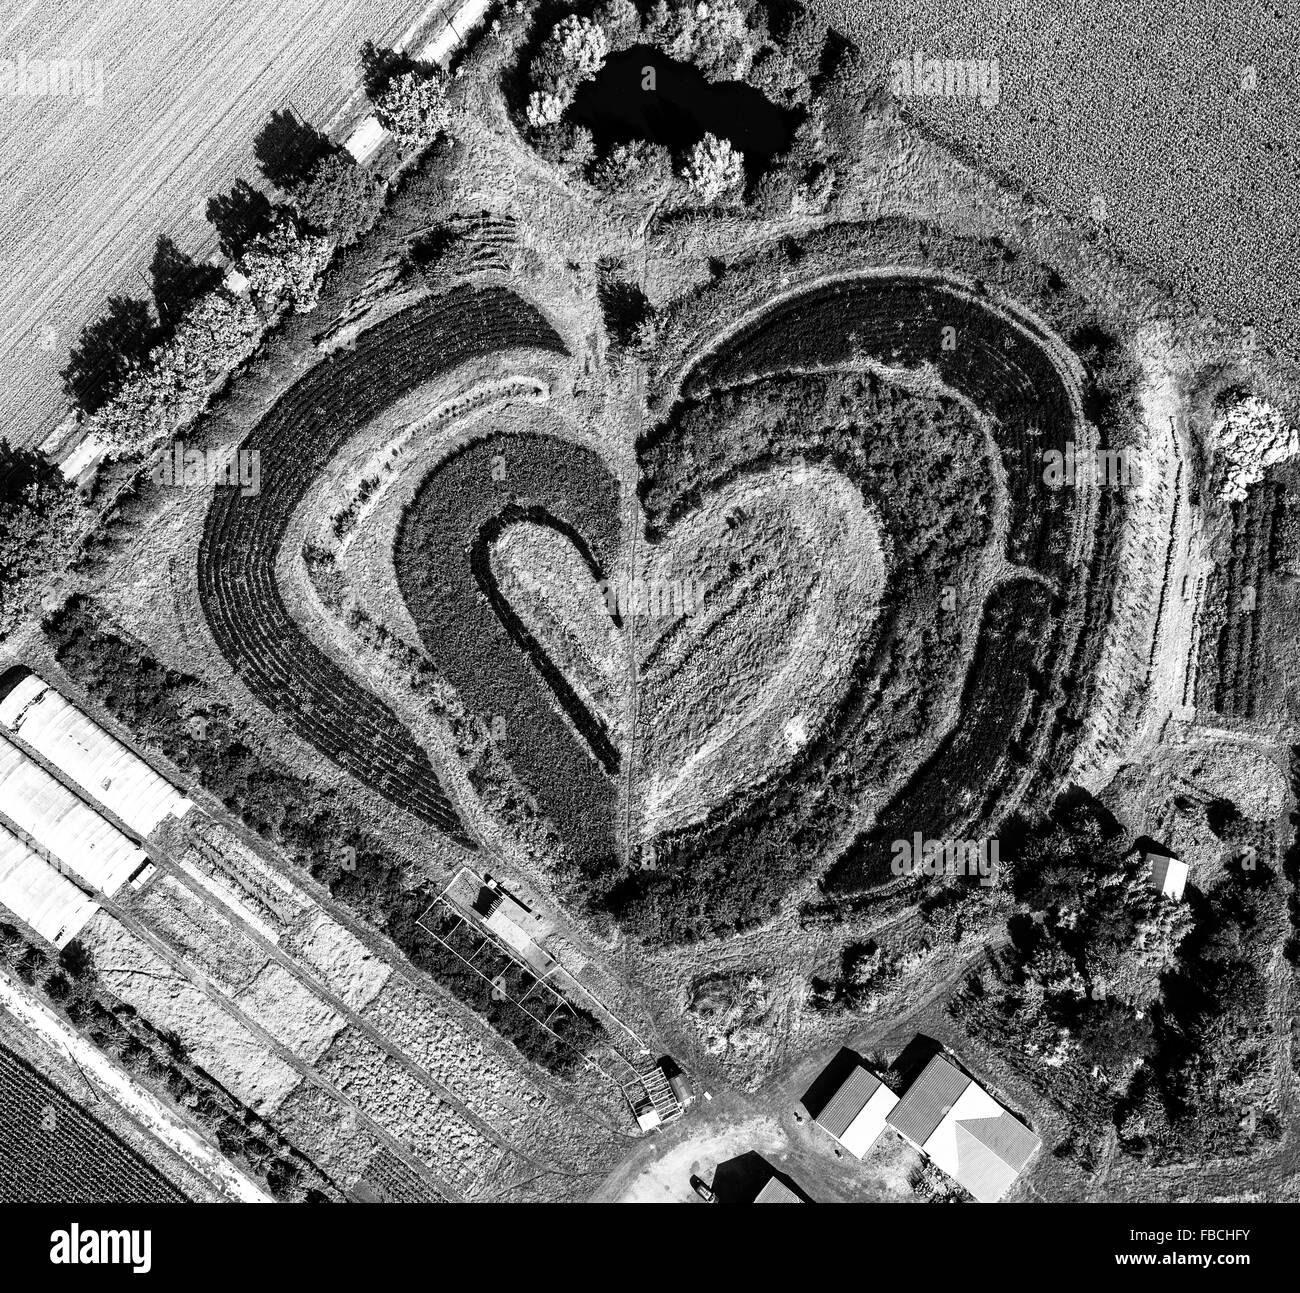 Antena, horticultura Waltrop, con forma de corazón, camas con forma de corazón, corazón, hortícolas, de granja, Waltrop, área de Ruhr, Foto de stock